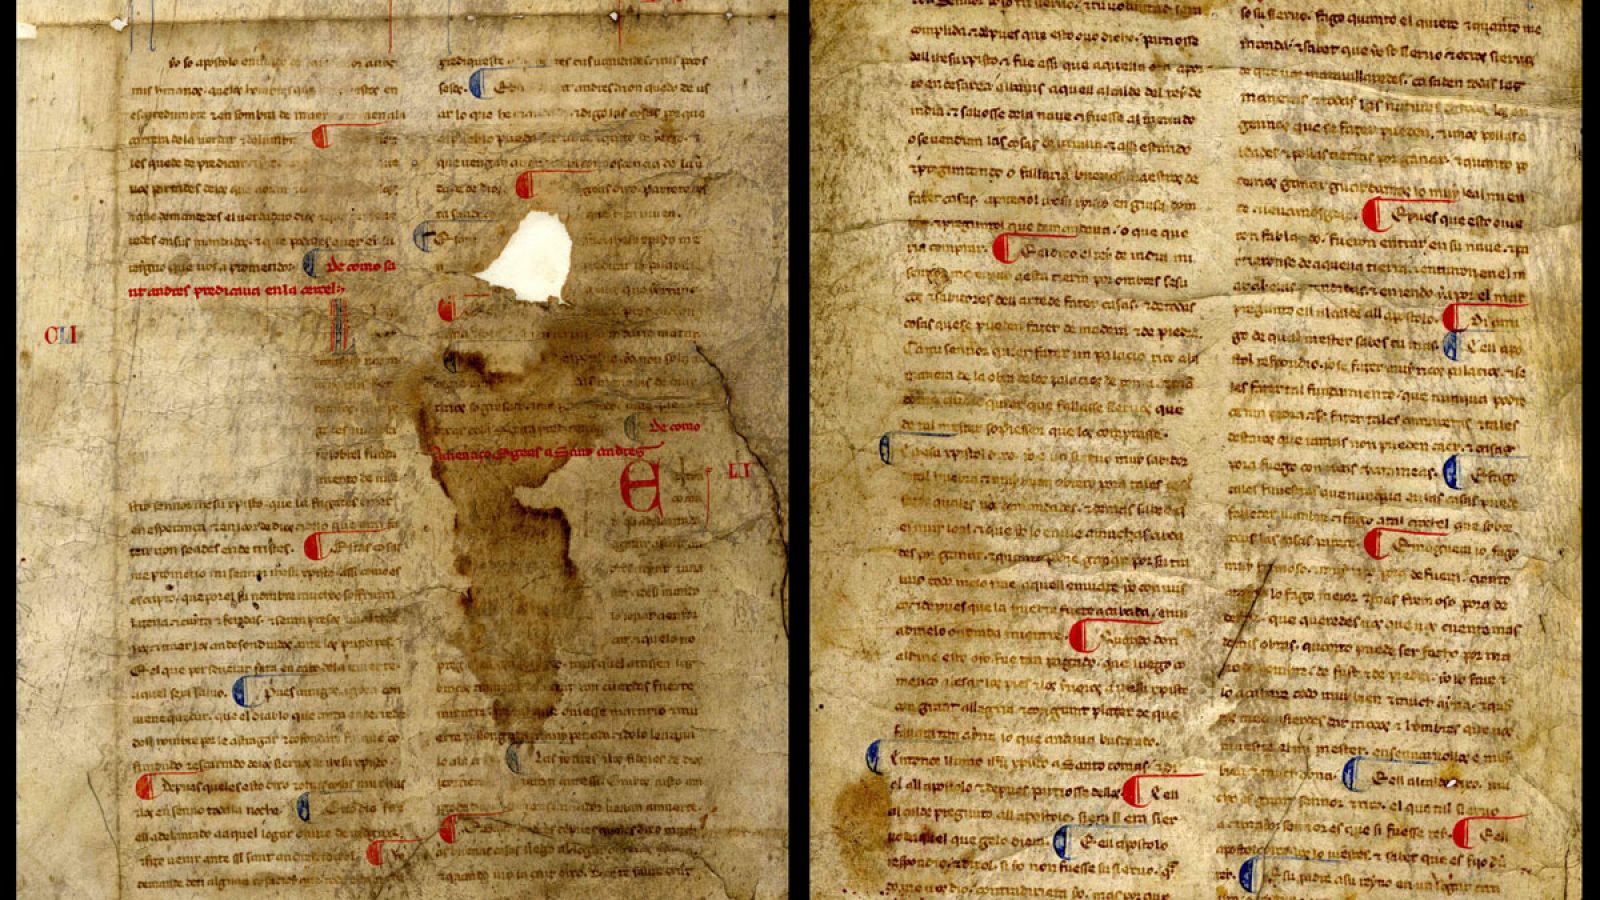 Valioso manuscrito medieval, del siglo XIII, hallado en el Archivo provincial de Ourense